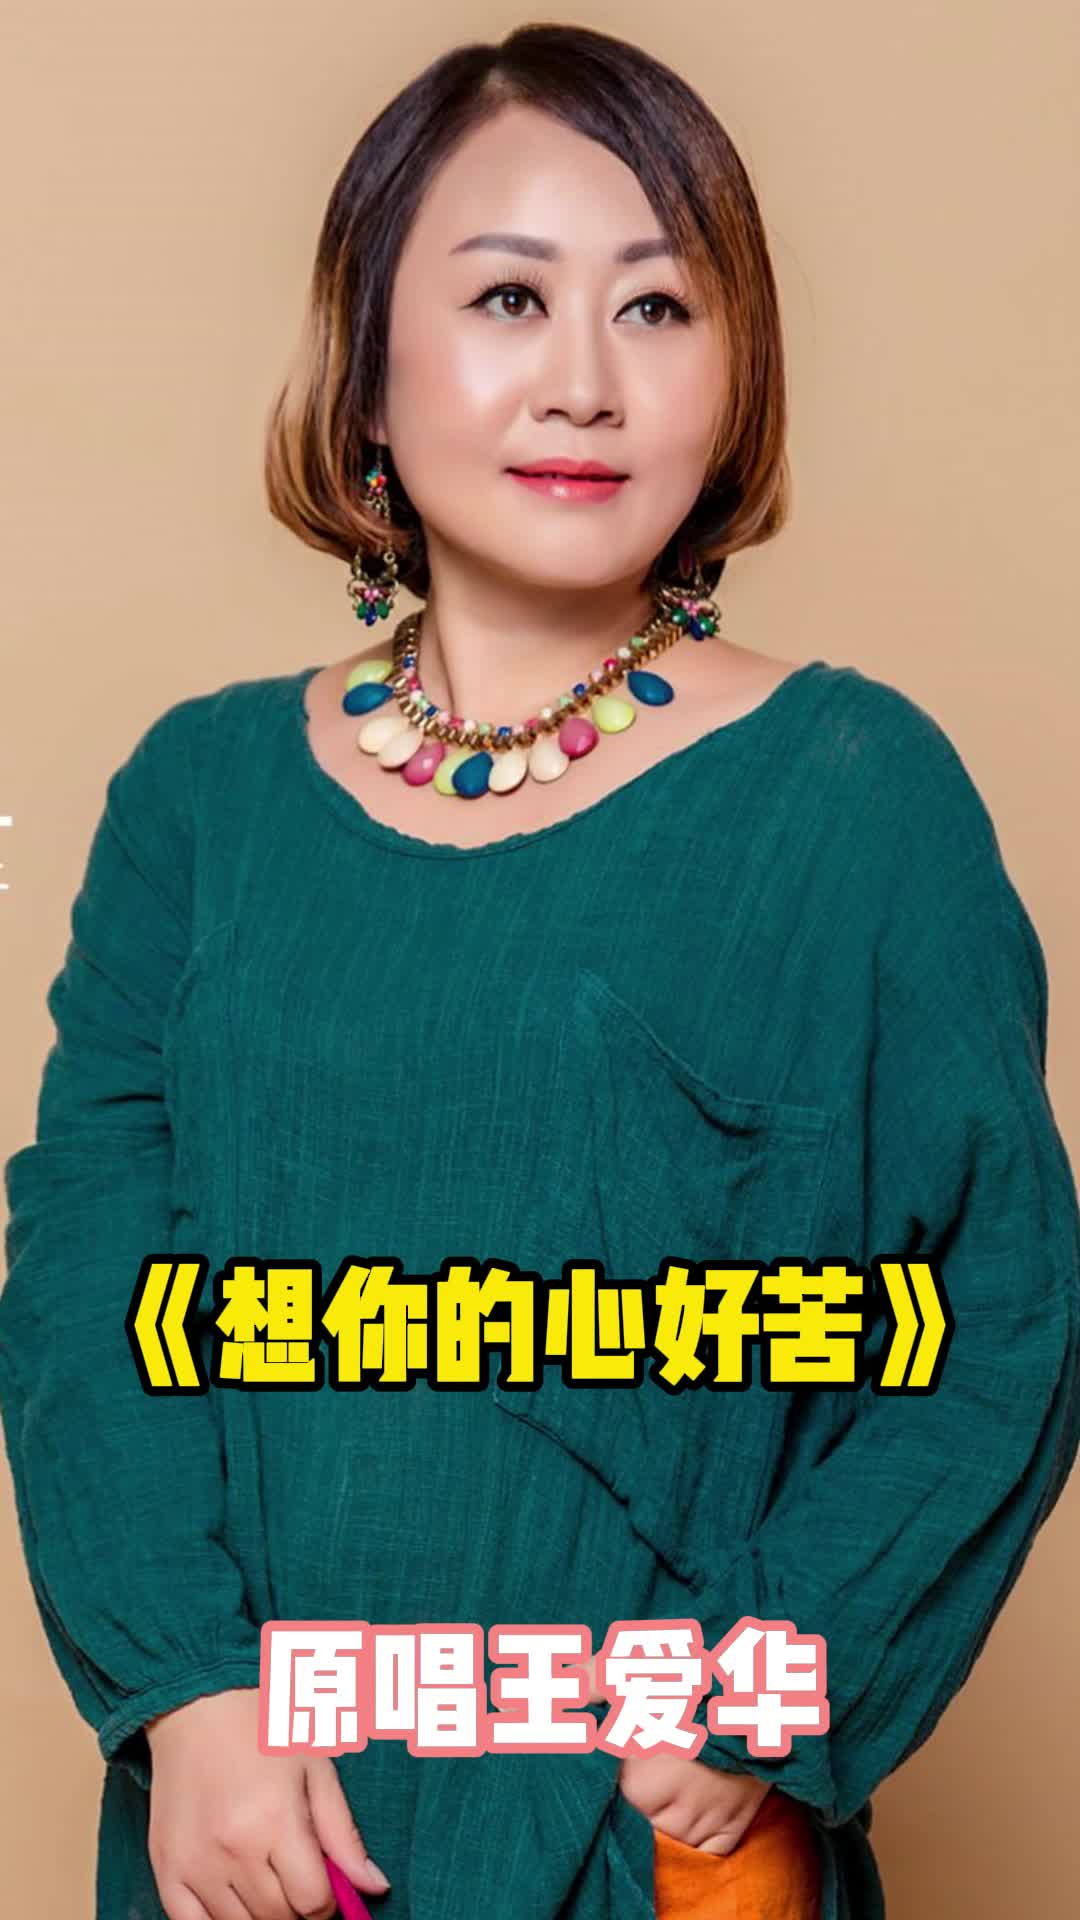 女歌手王爱华的照片图片